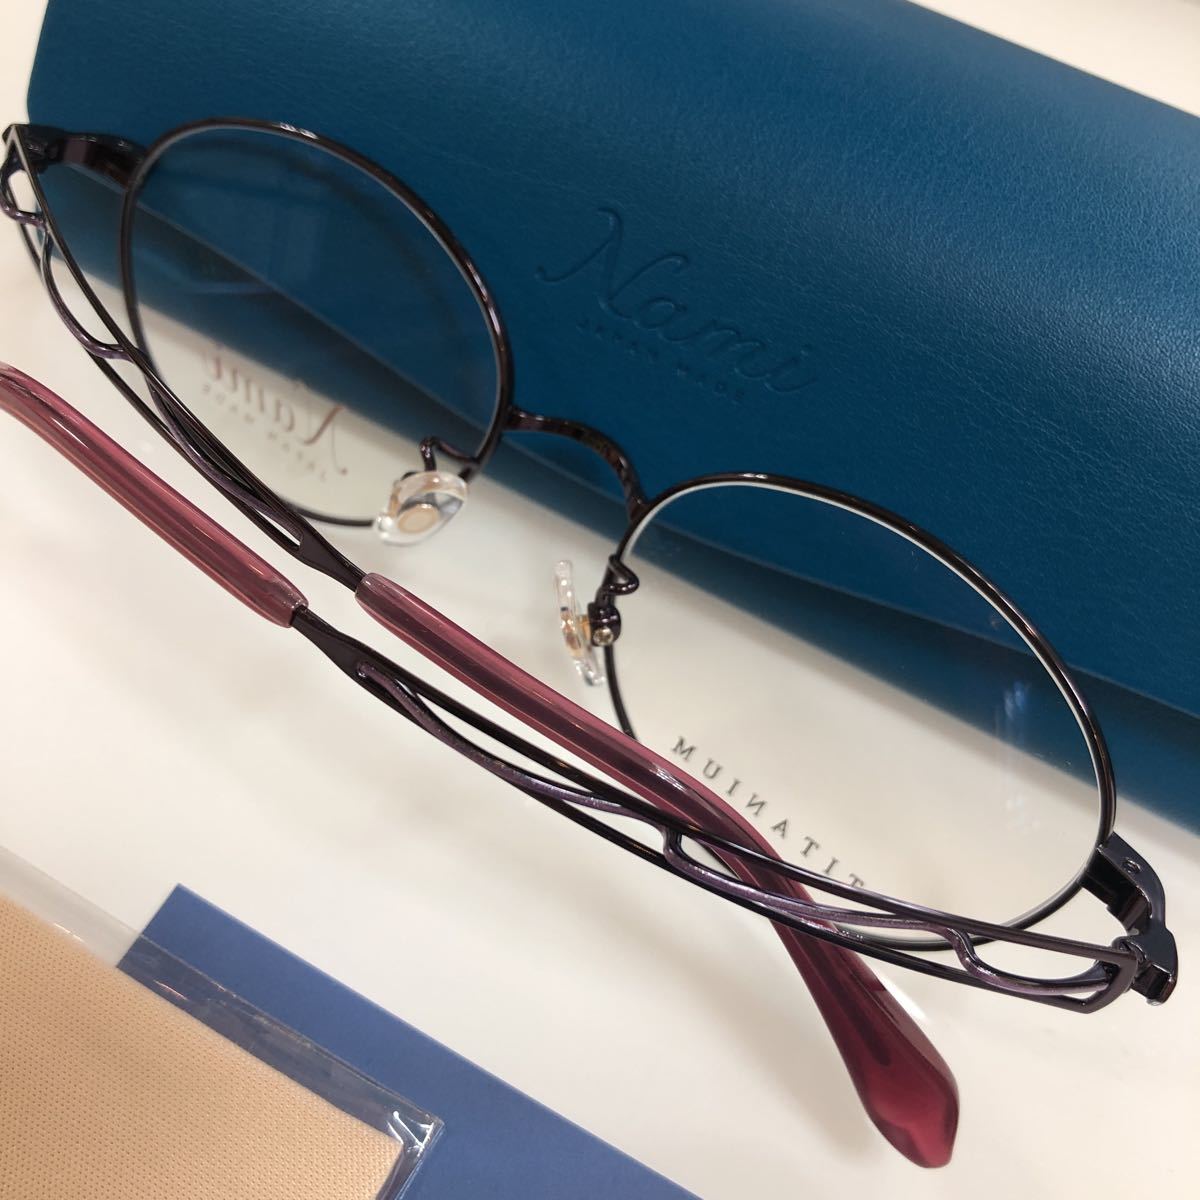 日本製 安心の2年正規保証付き! Nami ナミ JP1022 5018 日本 国産 Made In Japan メガネフレーム メガネ 眼鏡 フレーム JAPAN MADE